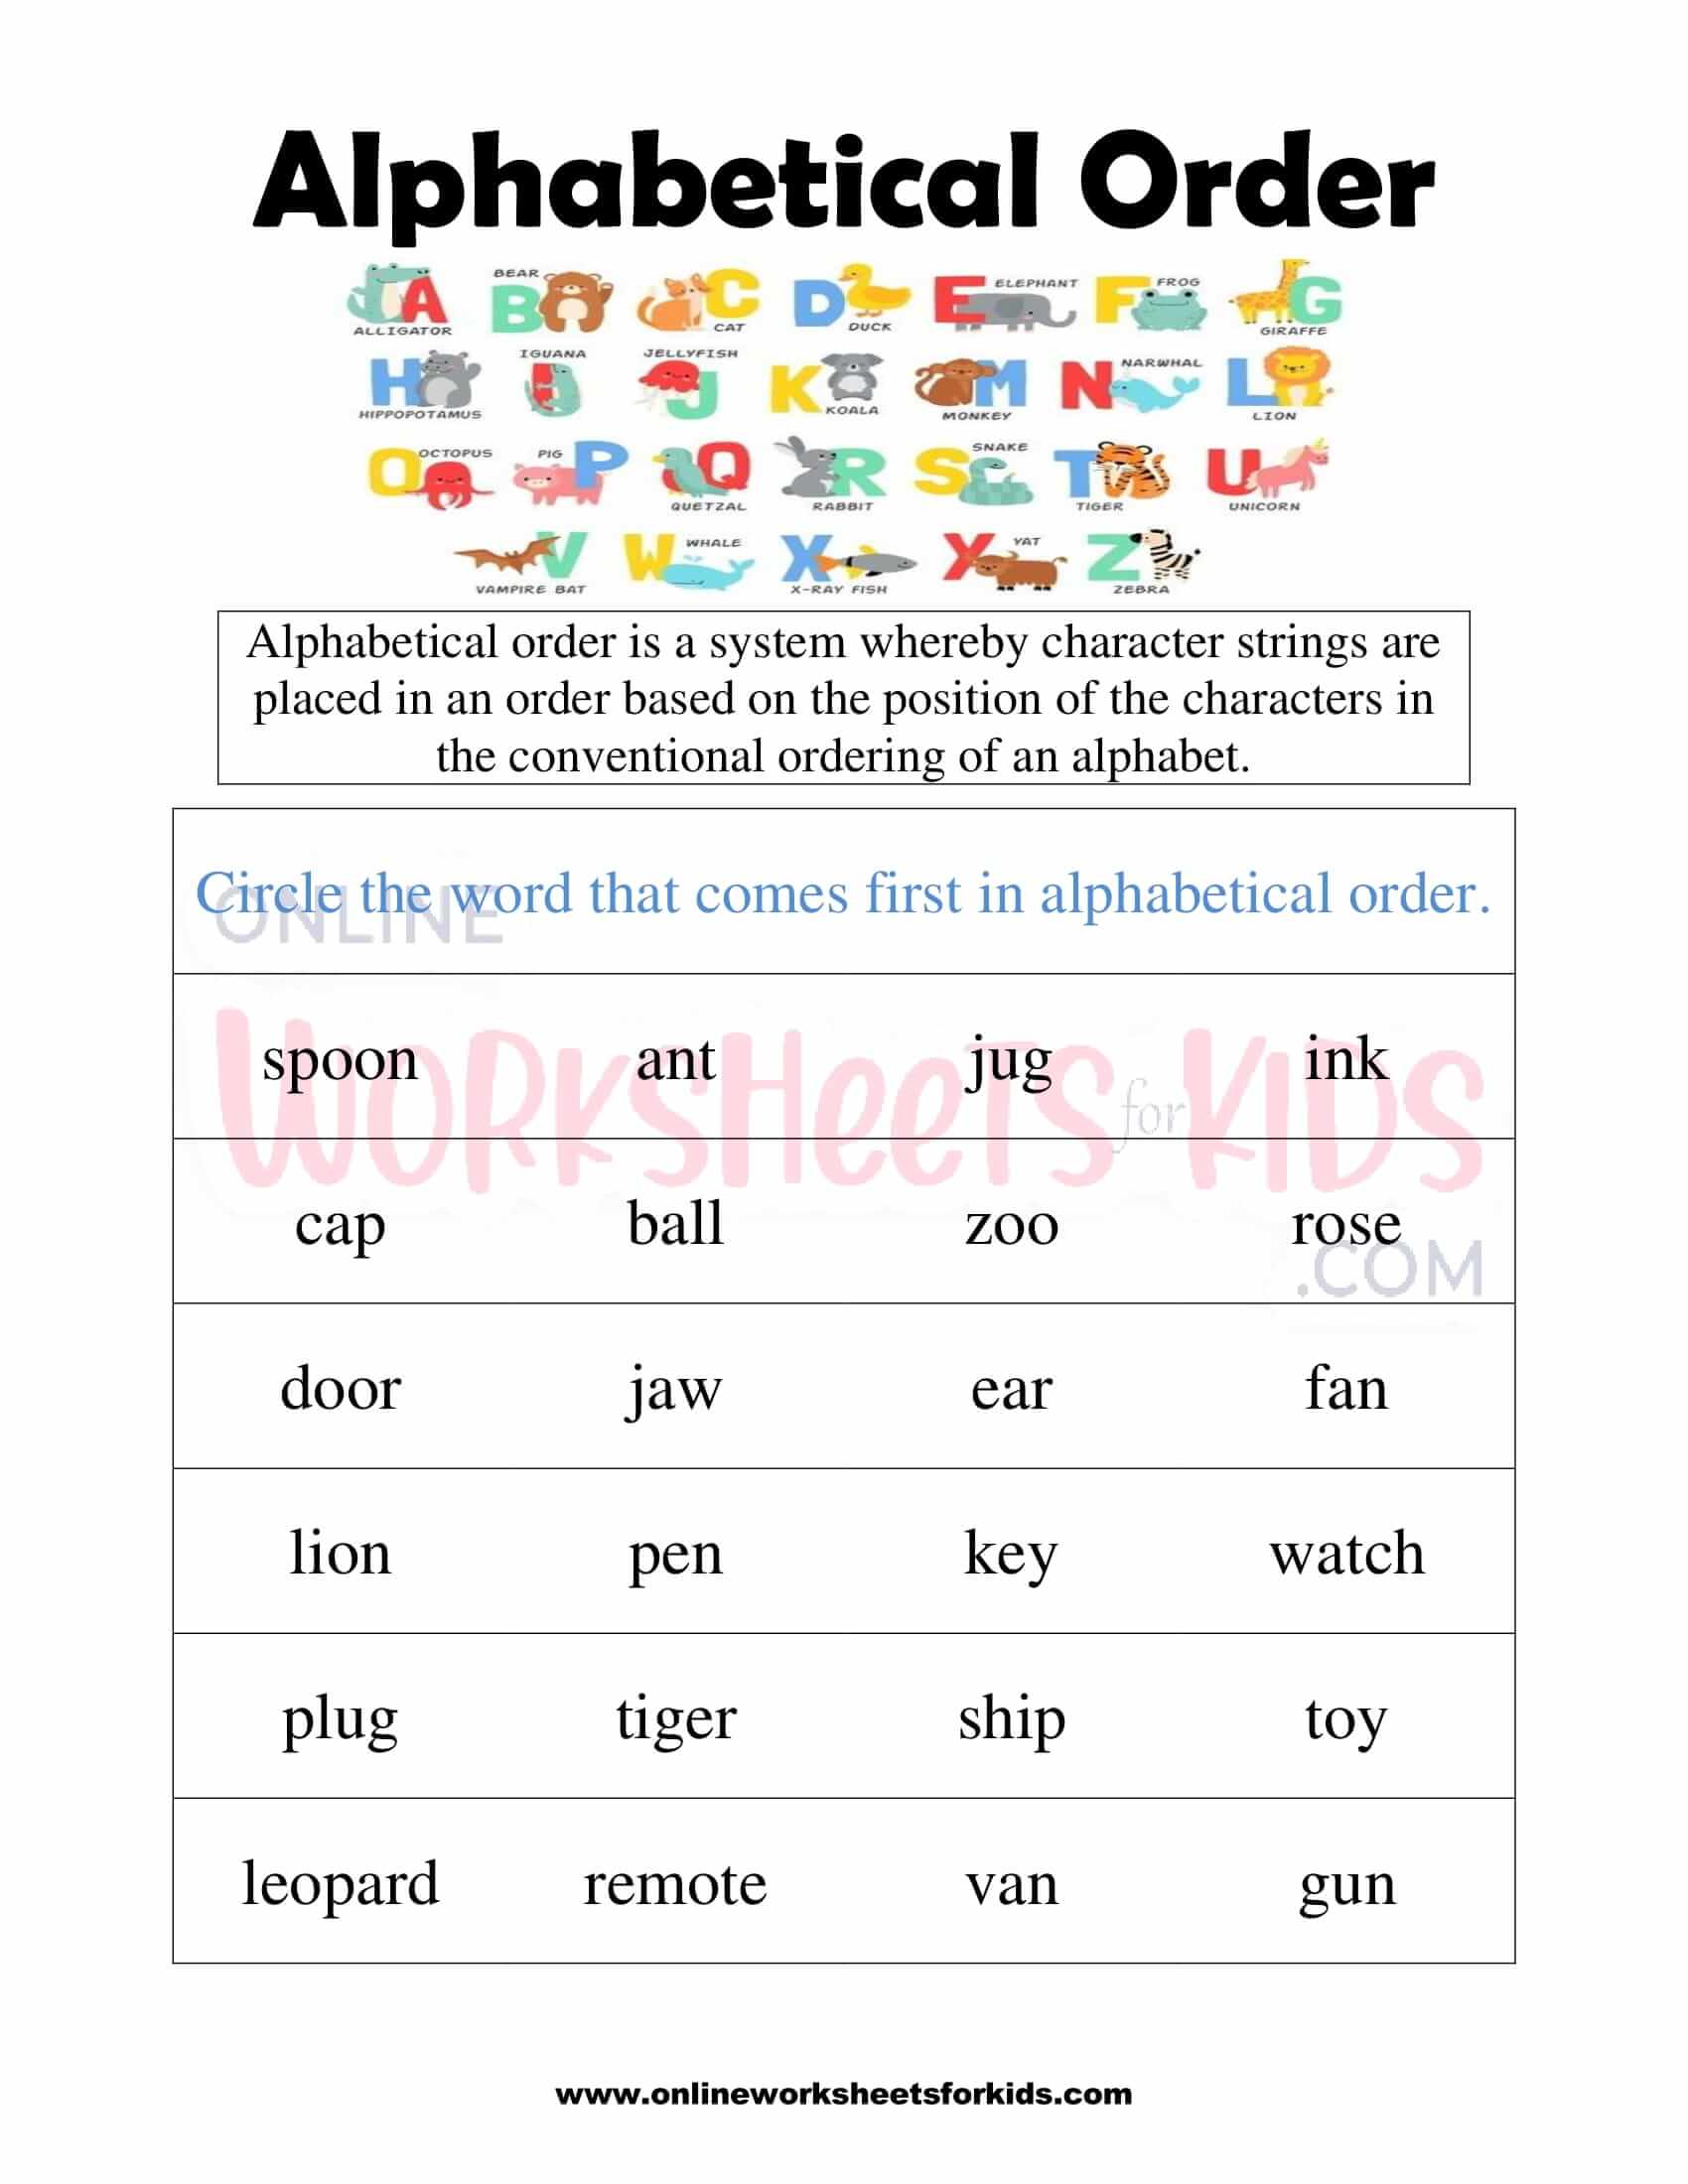 alphabetical-order-worksheets-for-grade-1-1